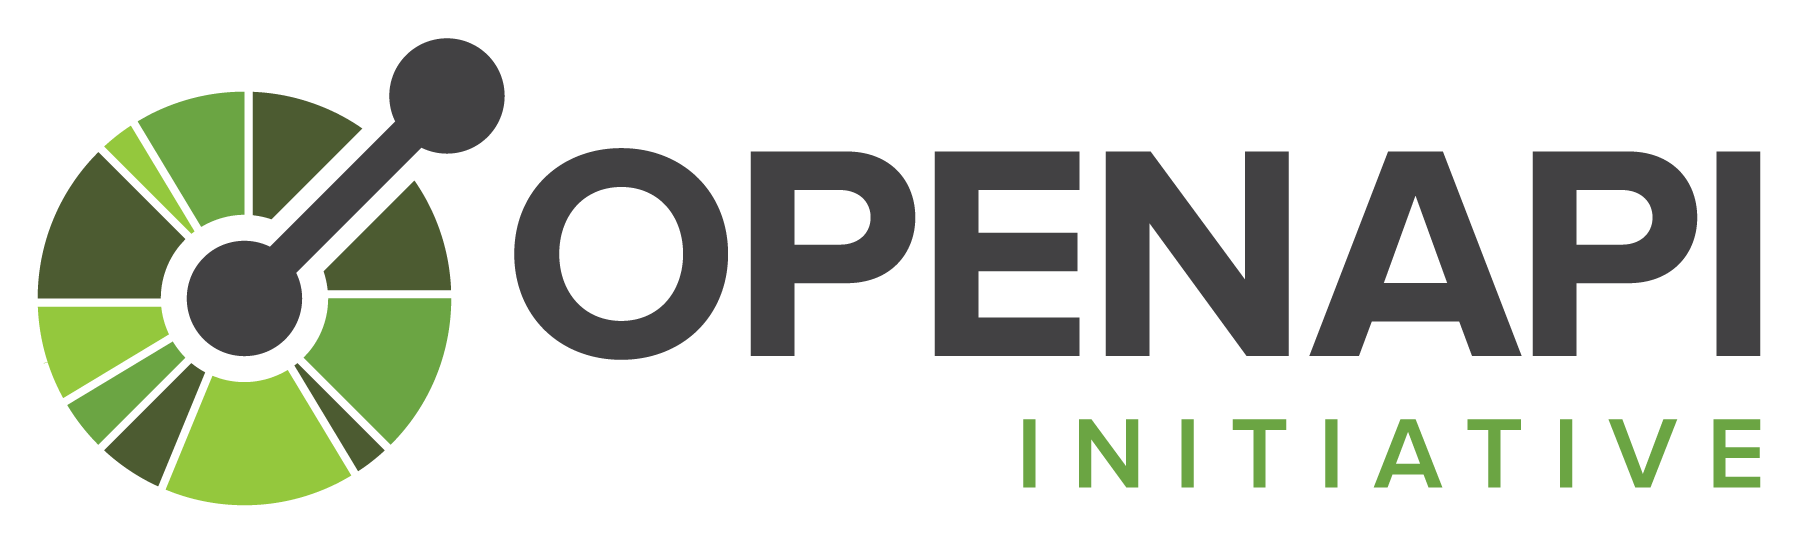 Open API Initiative